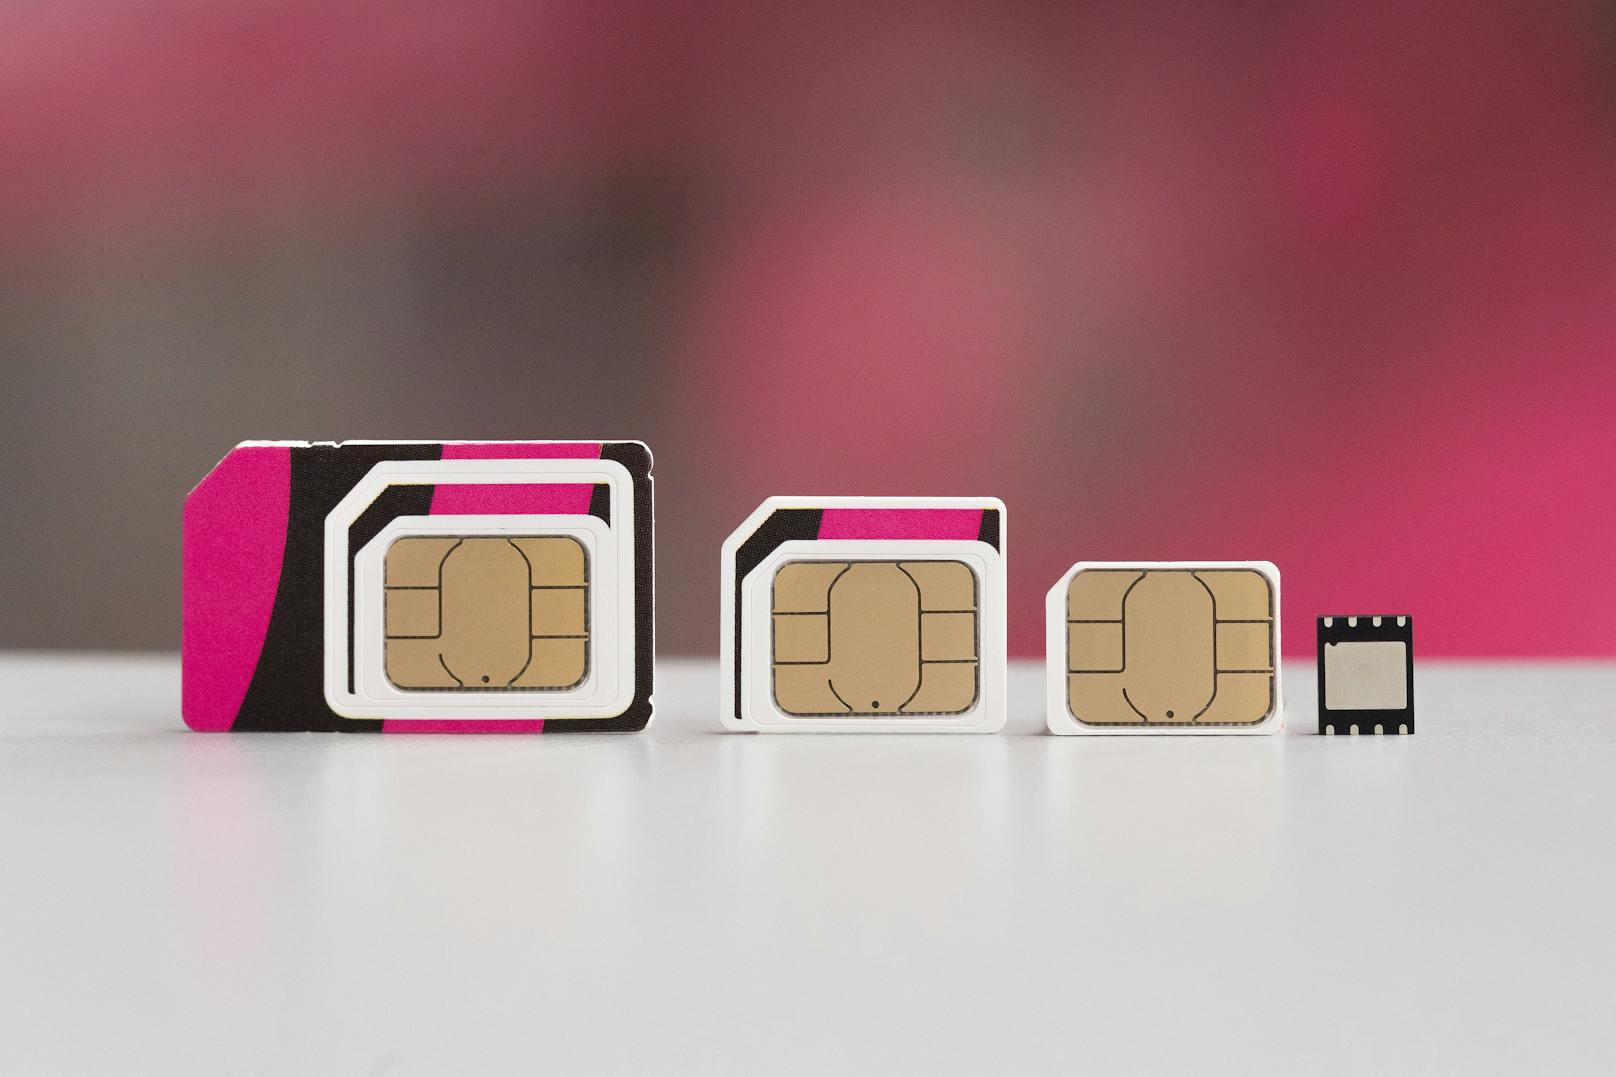 Magenta startet Zwei-Faktor-Authentifizierung für SIM-Kartentausch und eSIM-Profile